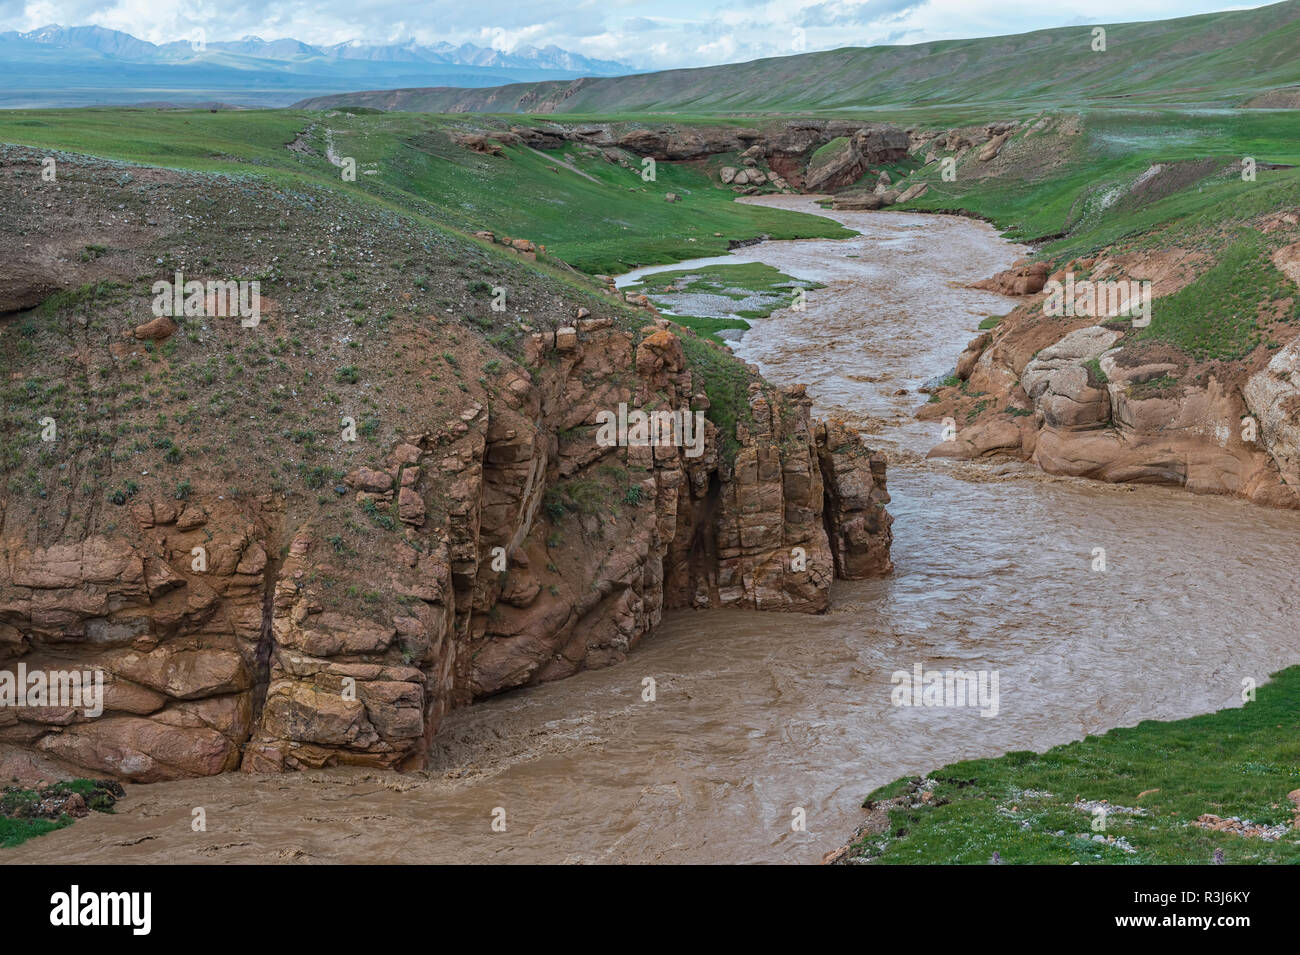 Rivière de montagne boueuse en passant par une gorge sauvage, région de l'Issyk Kul, Kirghizistan Banque D'Images